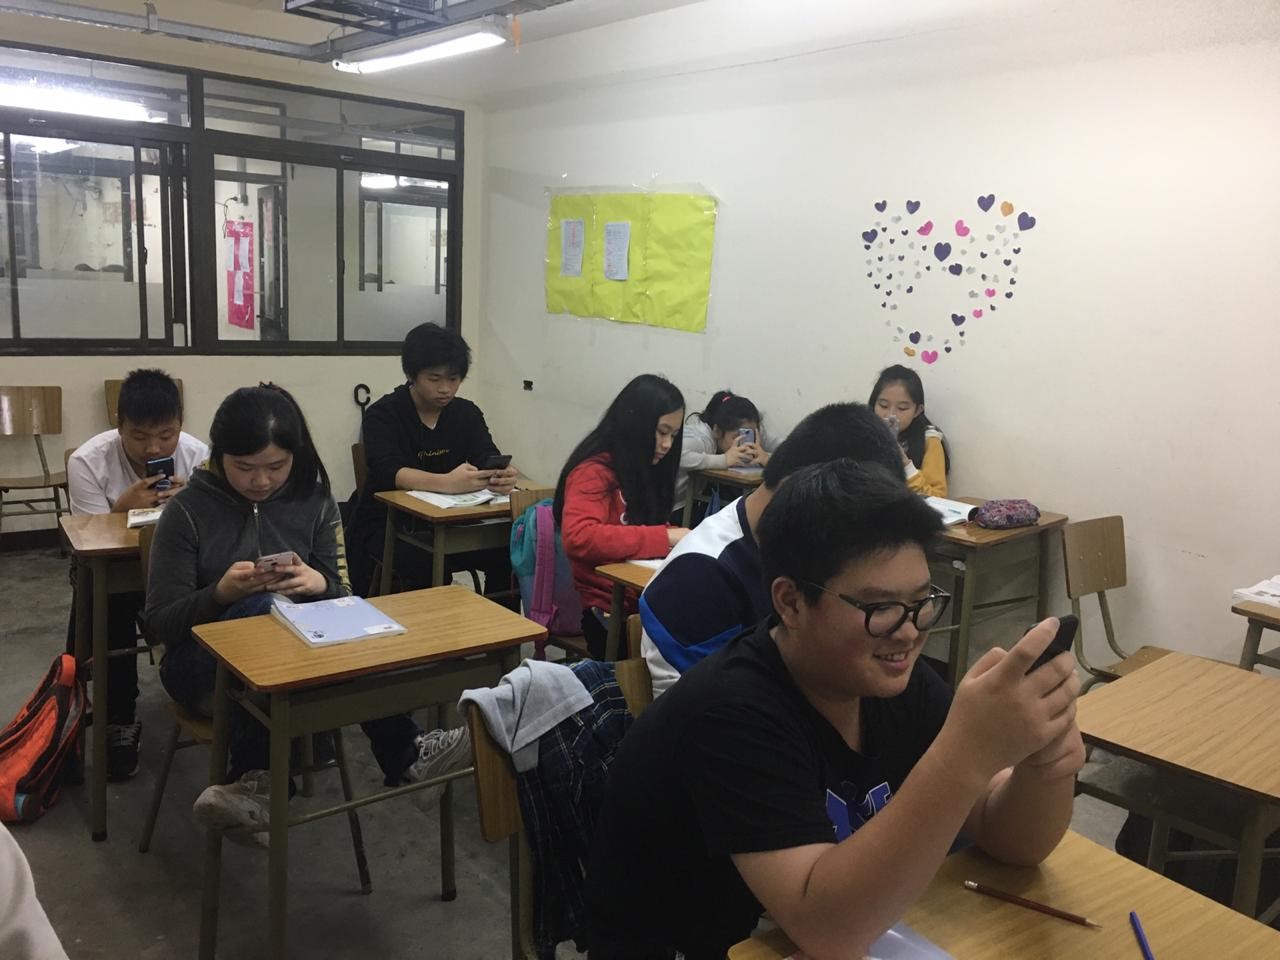 阿根廷新興中文學校中學部2019年手機打字比賽比賽圖片